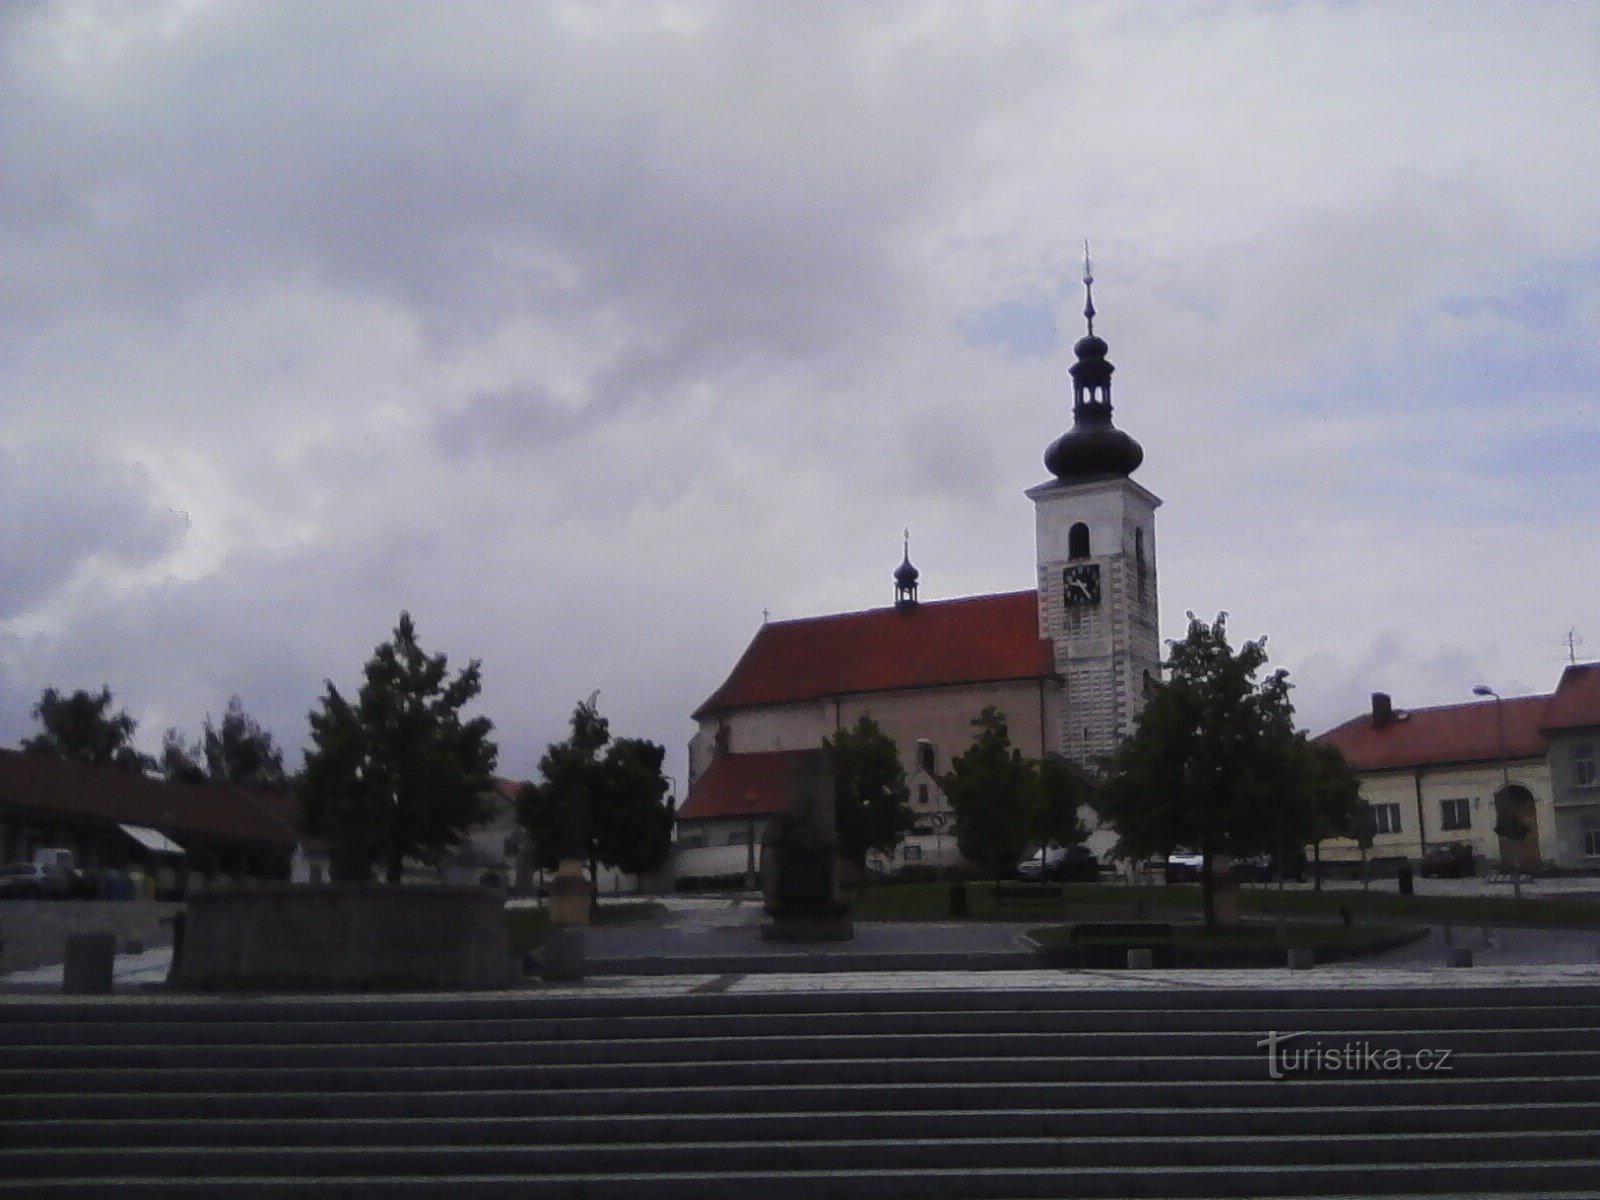 2. Kirche St. Vavřine in Prčica.